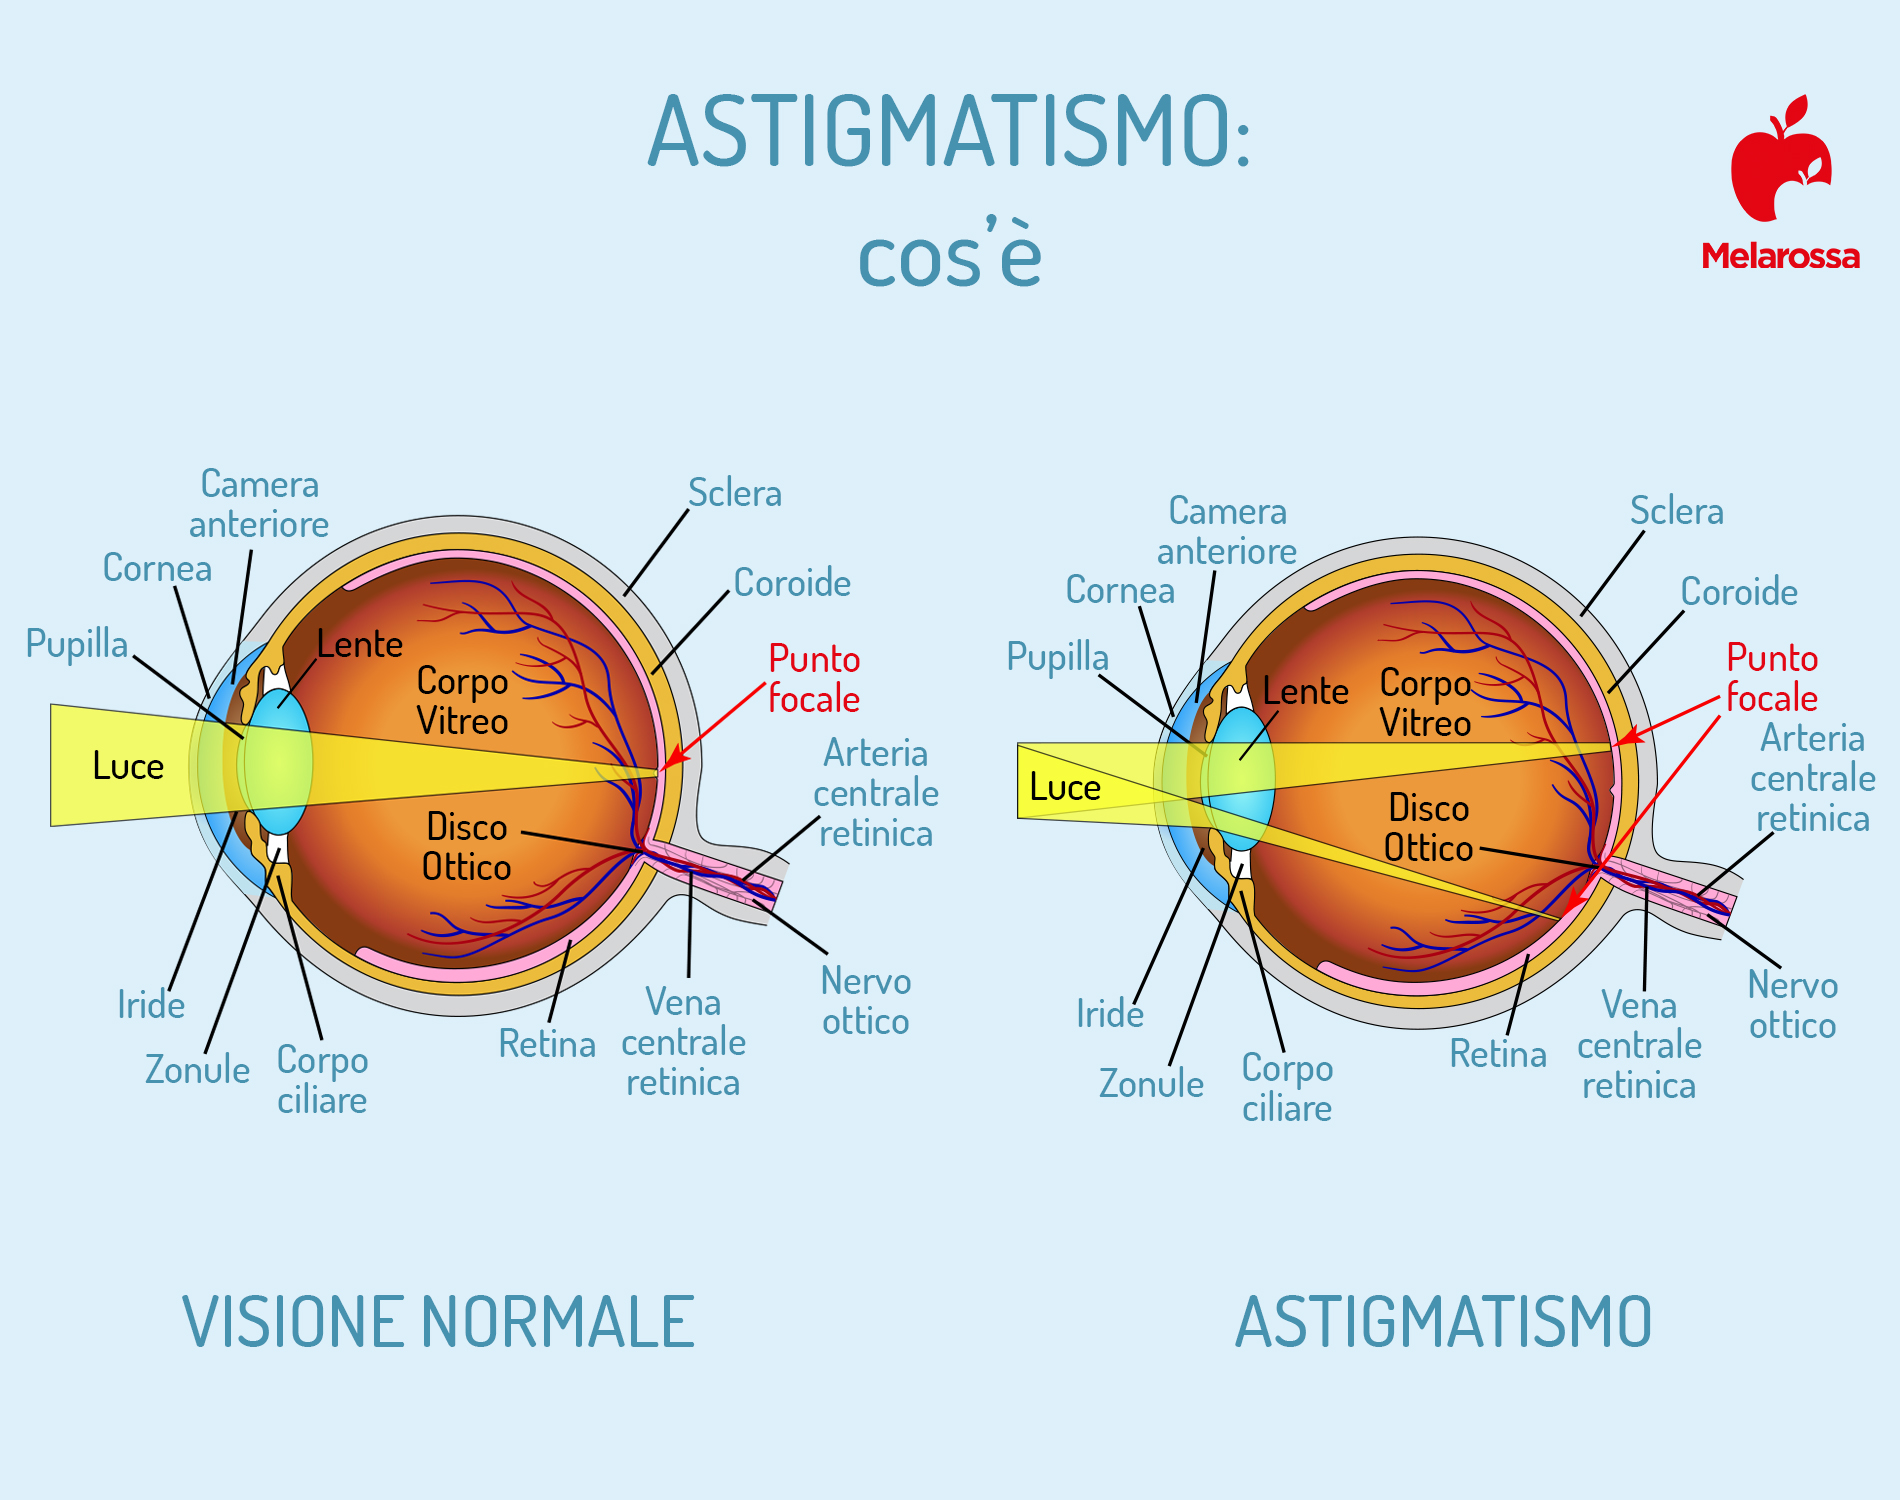 astigmatismo: anatomia dell'occhio